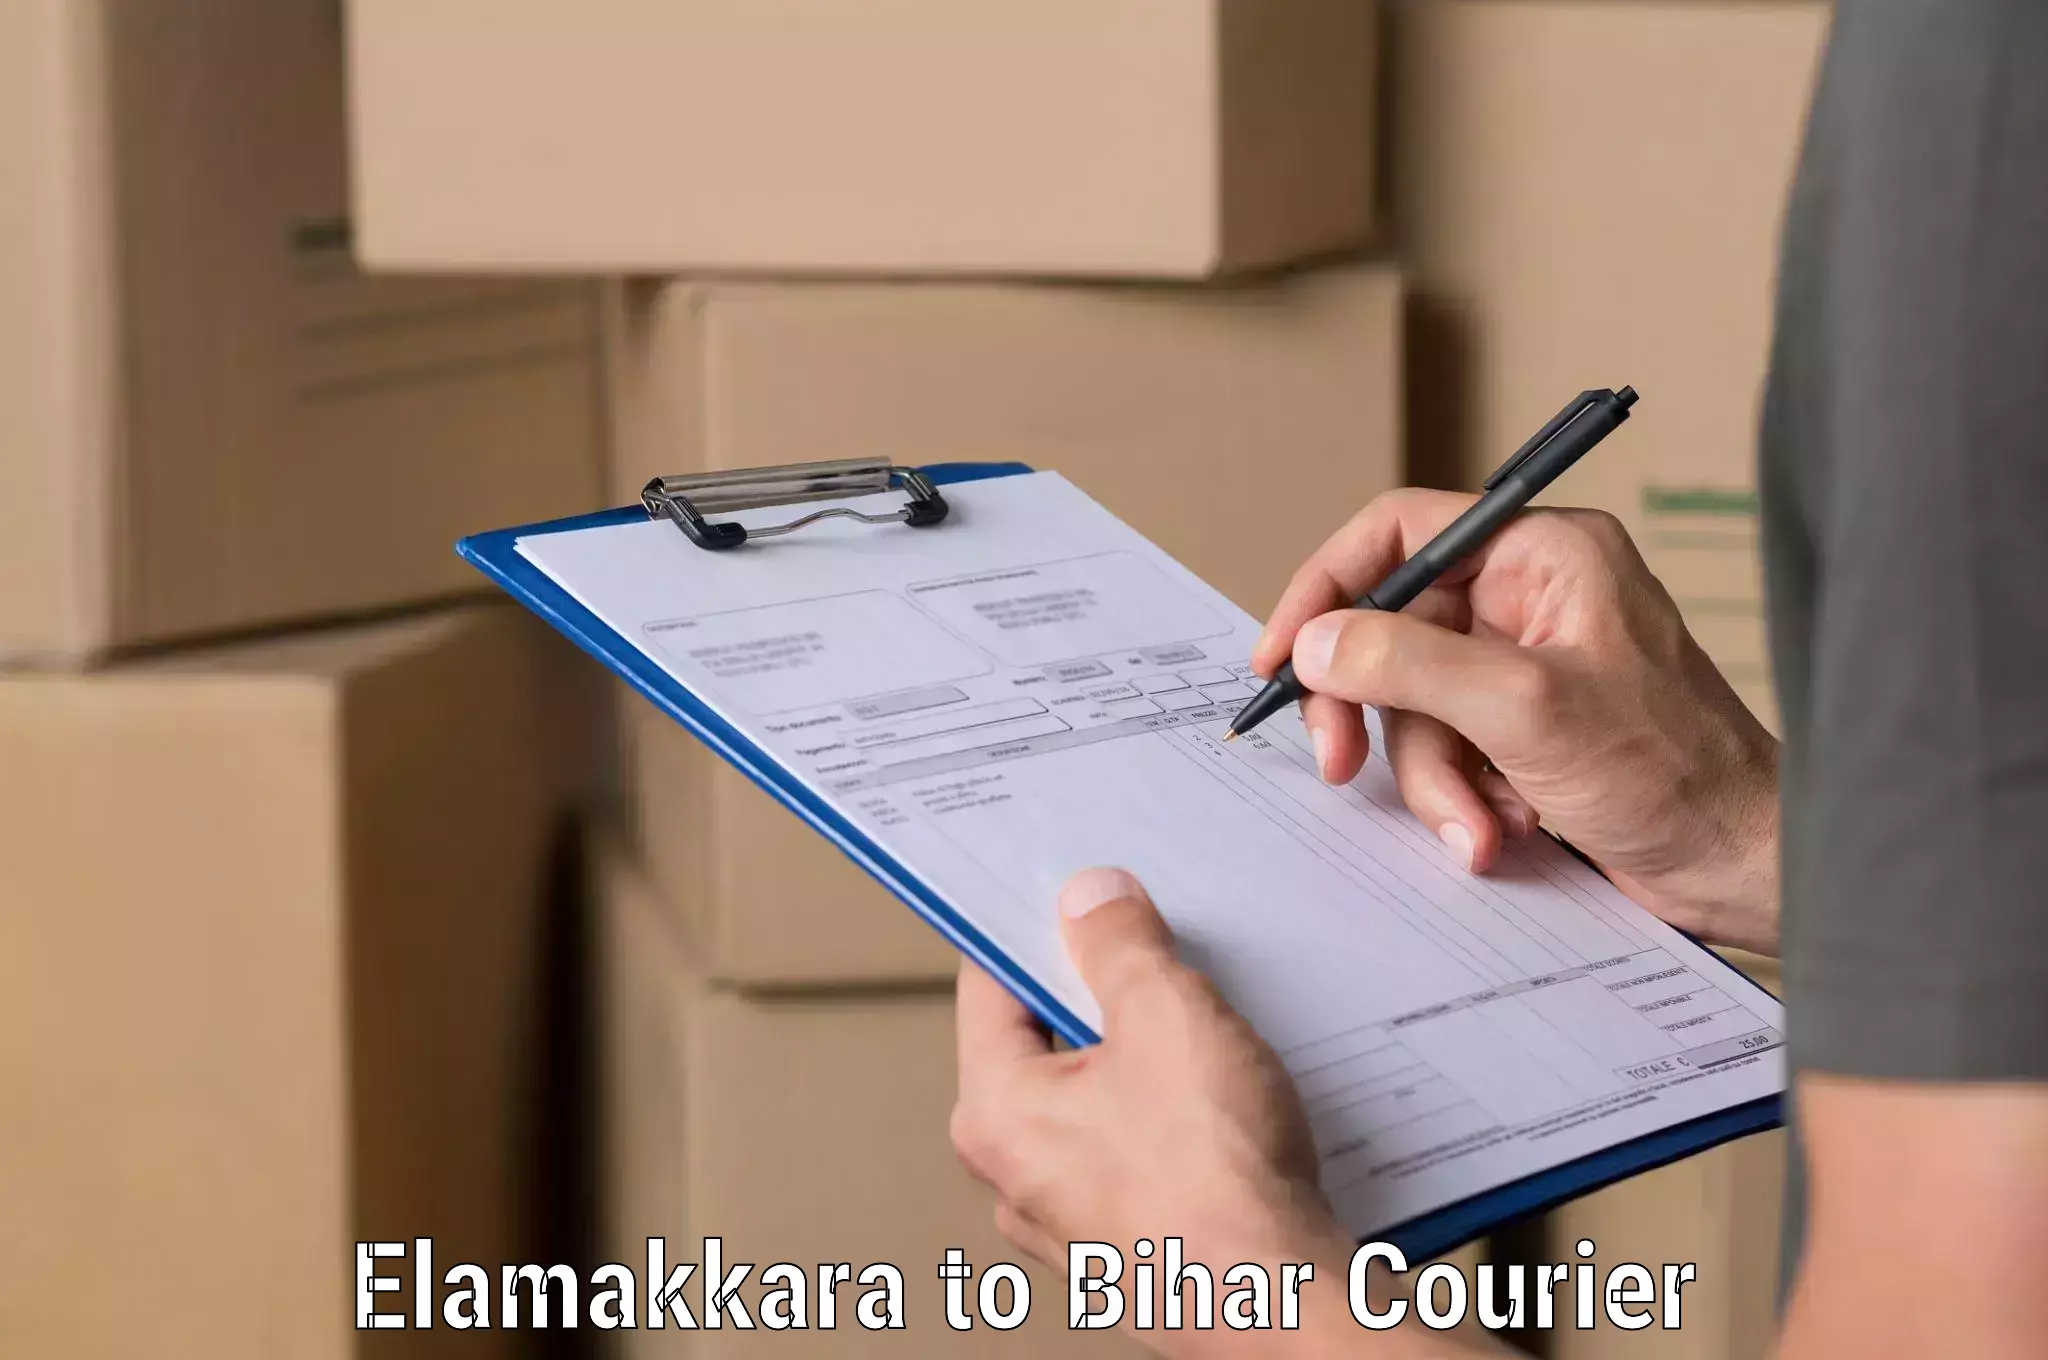 Air courier services Elamakkara to Sheohar